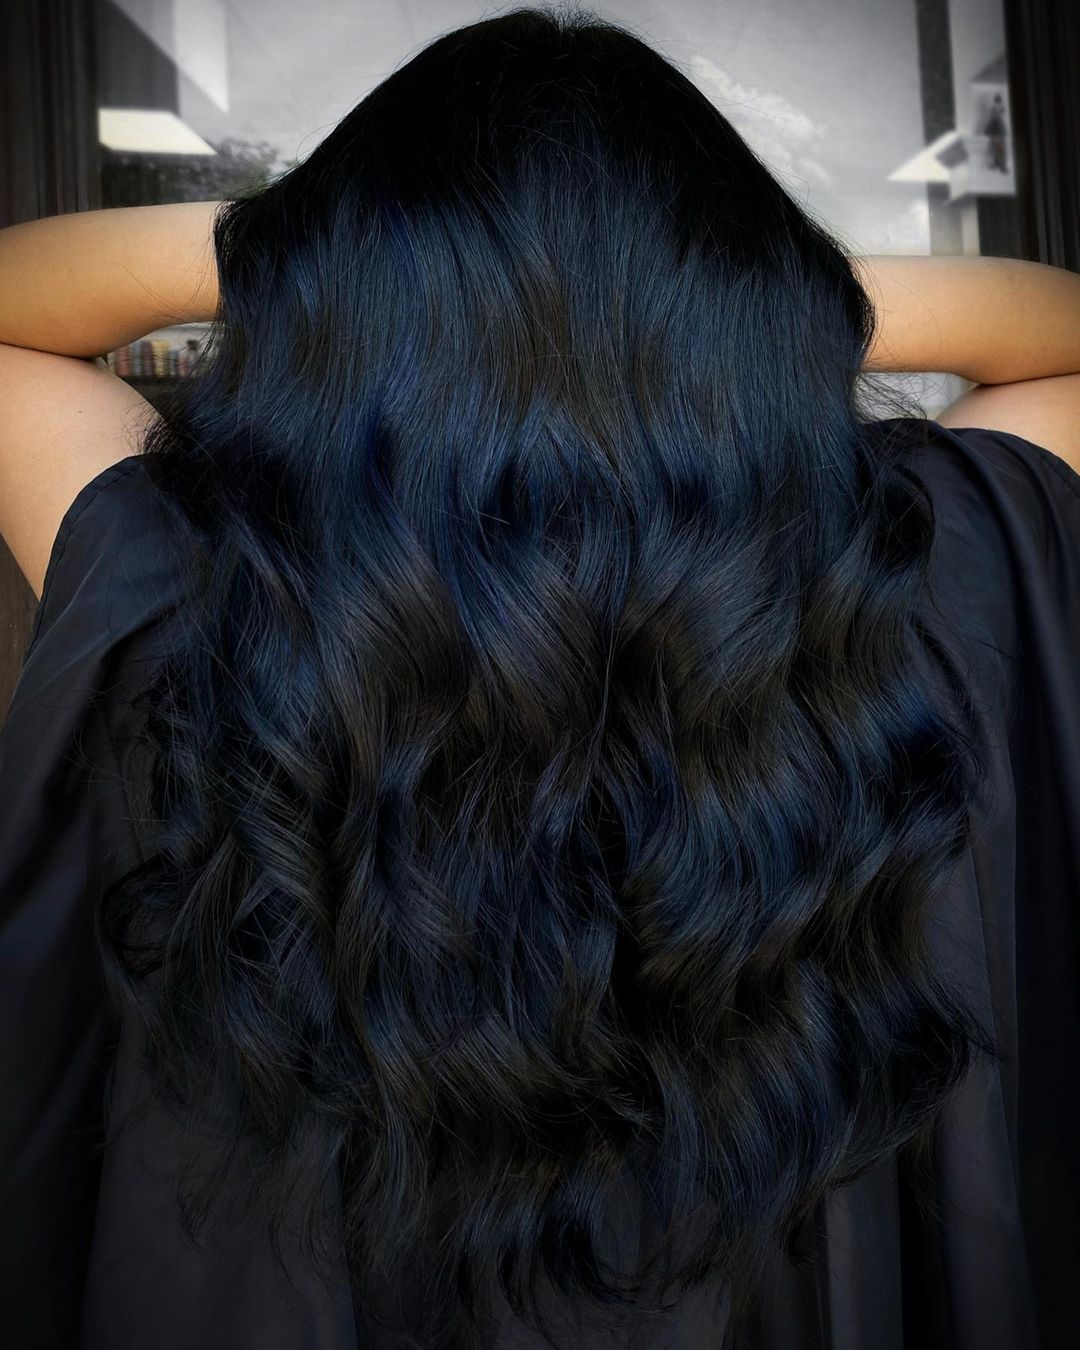 окрашивание черный синий коричневый шоколадный балаяж шатуш air touch на темные волосы брюнет зима 2020